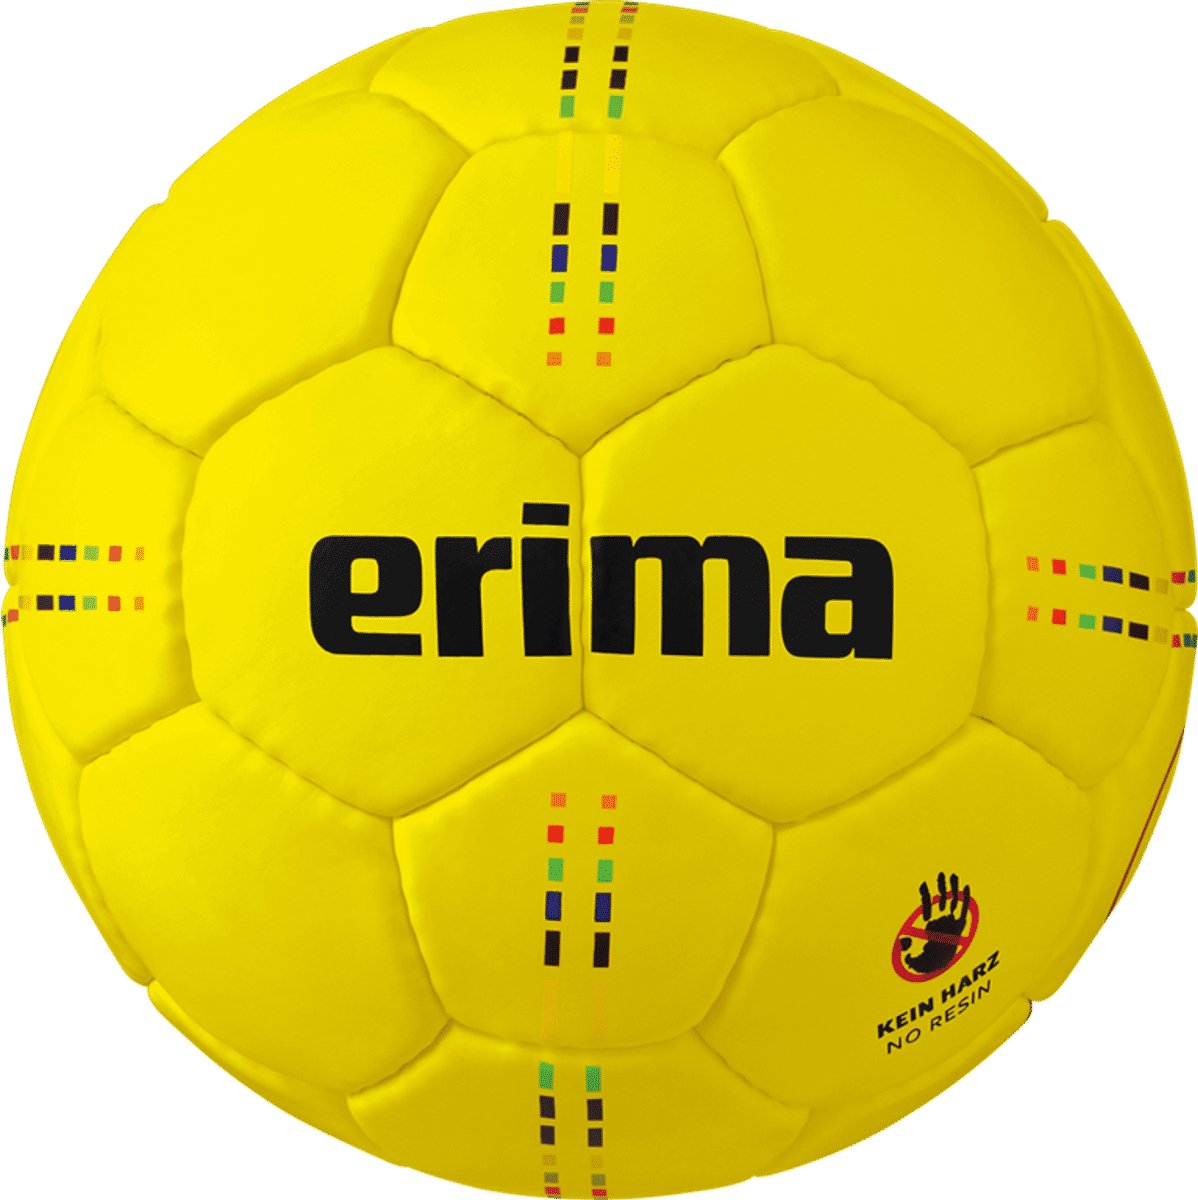 Erima Pure Grip No. 5 (Size 0) Handbal - Geel | Maat: 0